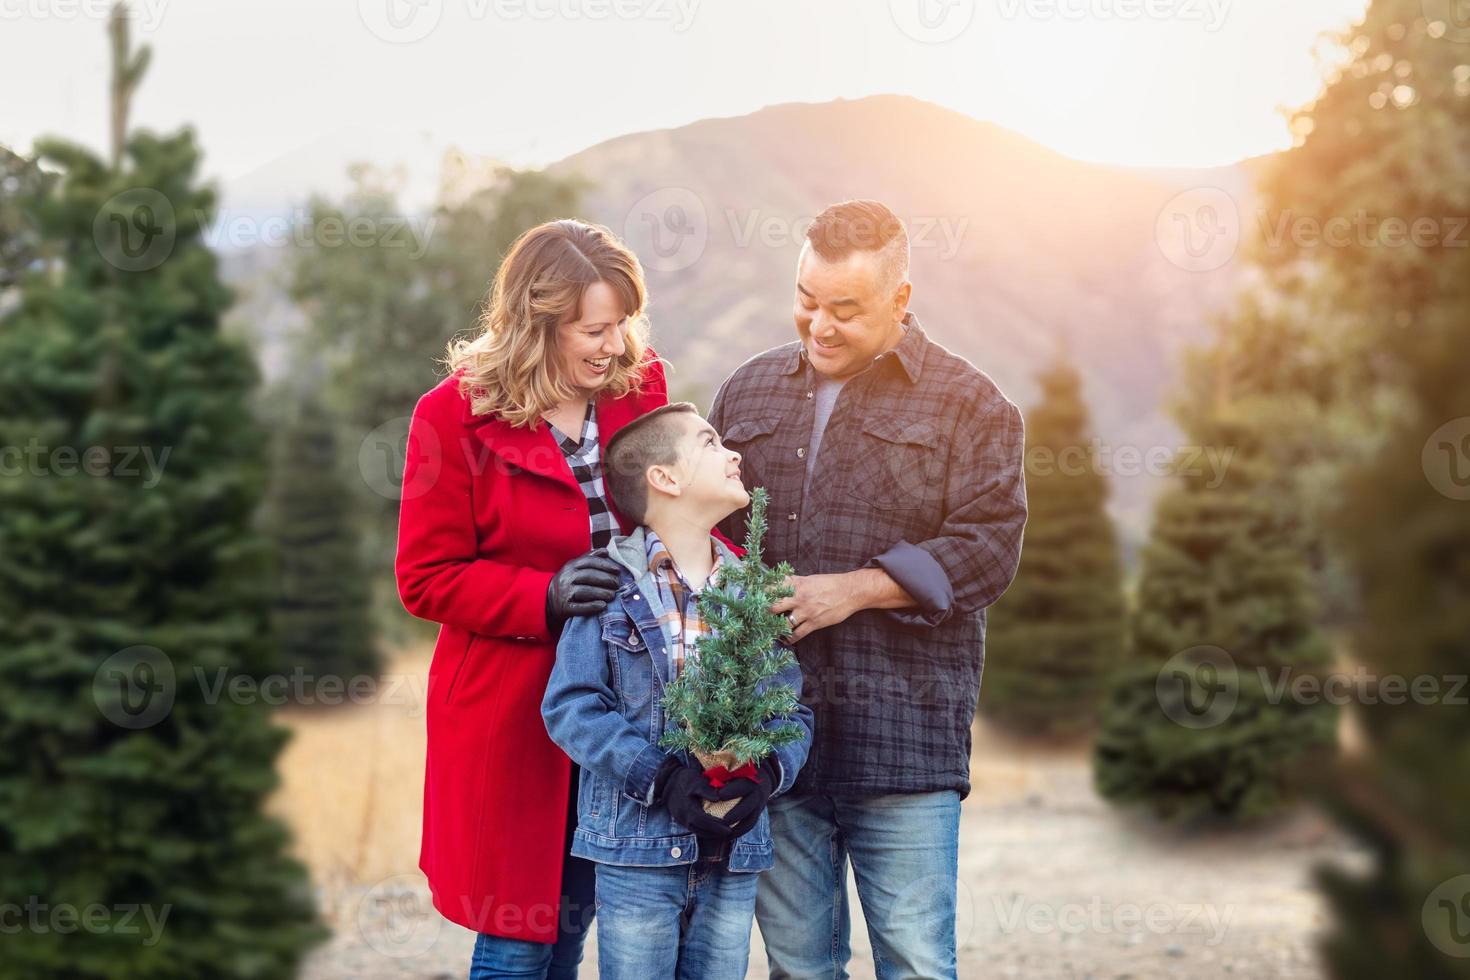 blandad lopp familj utomhus på jul träd bruka foto